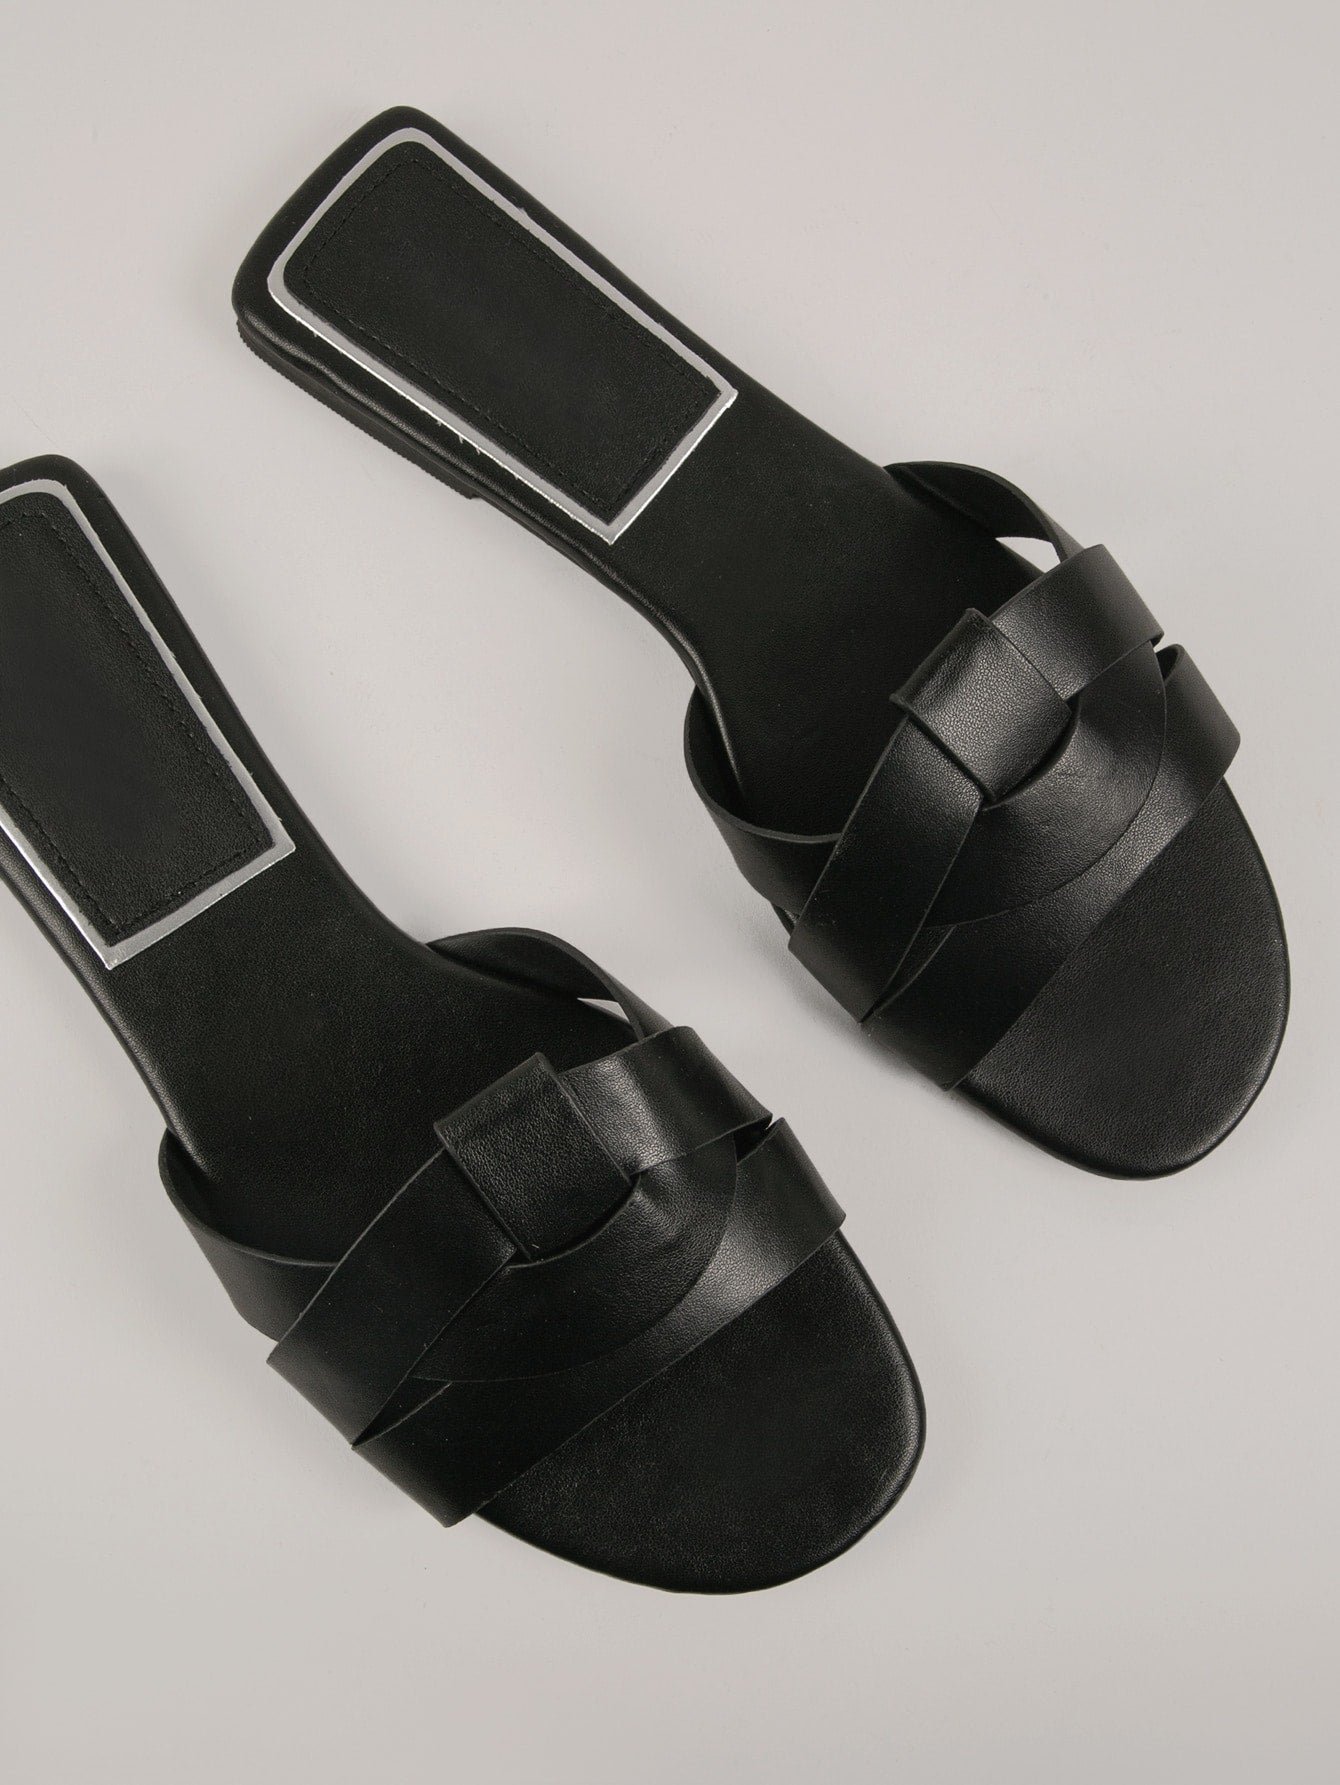 Sandalias planas minimalistas de mujer en piel sintética lisa con puntera abierta y tiras en la parte trasera